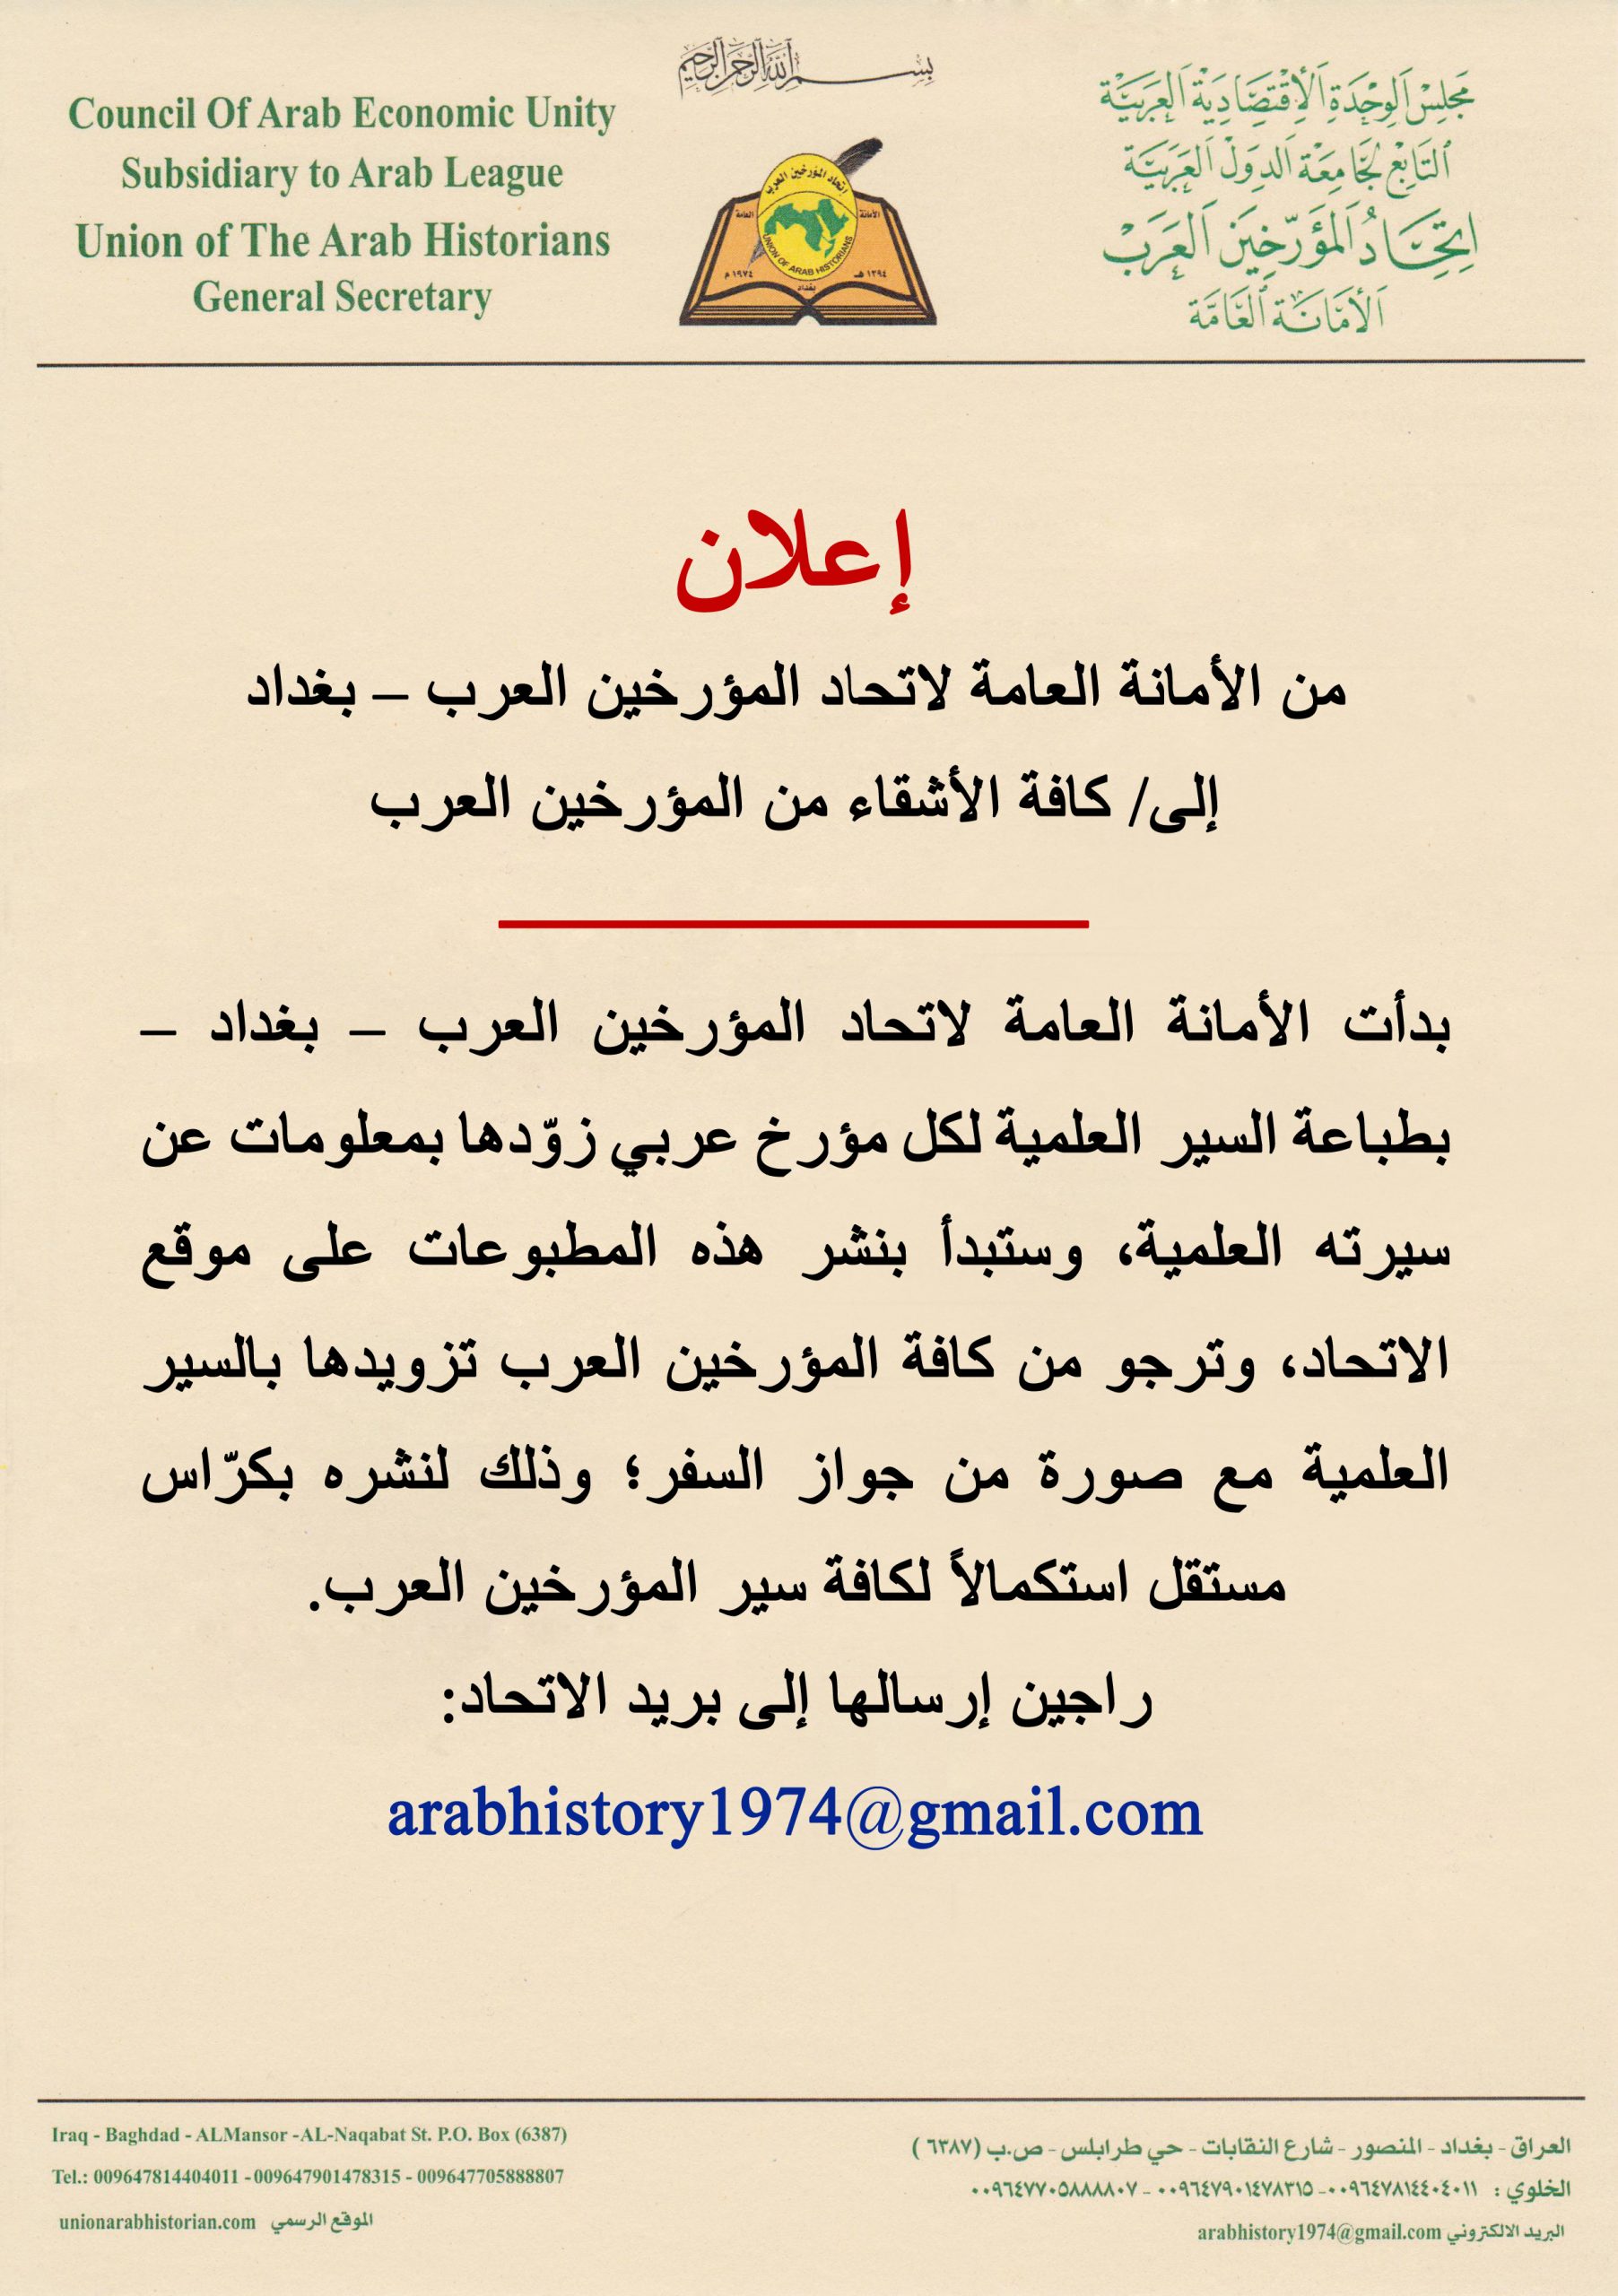 إعلان من الأمانة العامة لاتحاد المؤرخين العرب عن طباعة السير العلمية للمؤرخين العرب